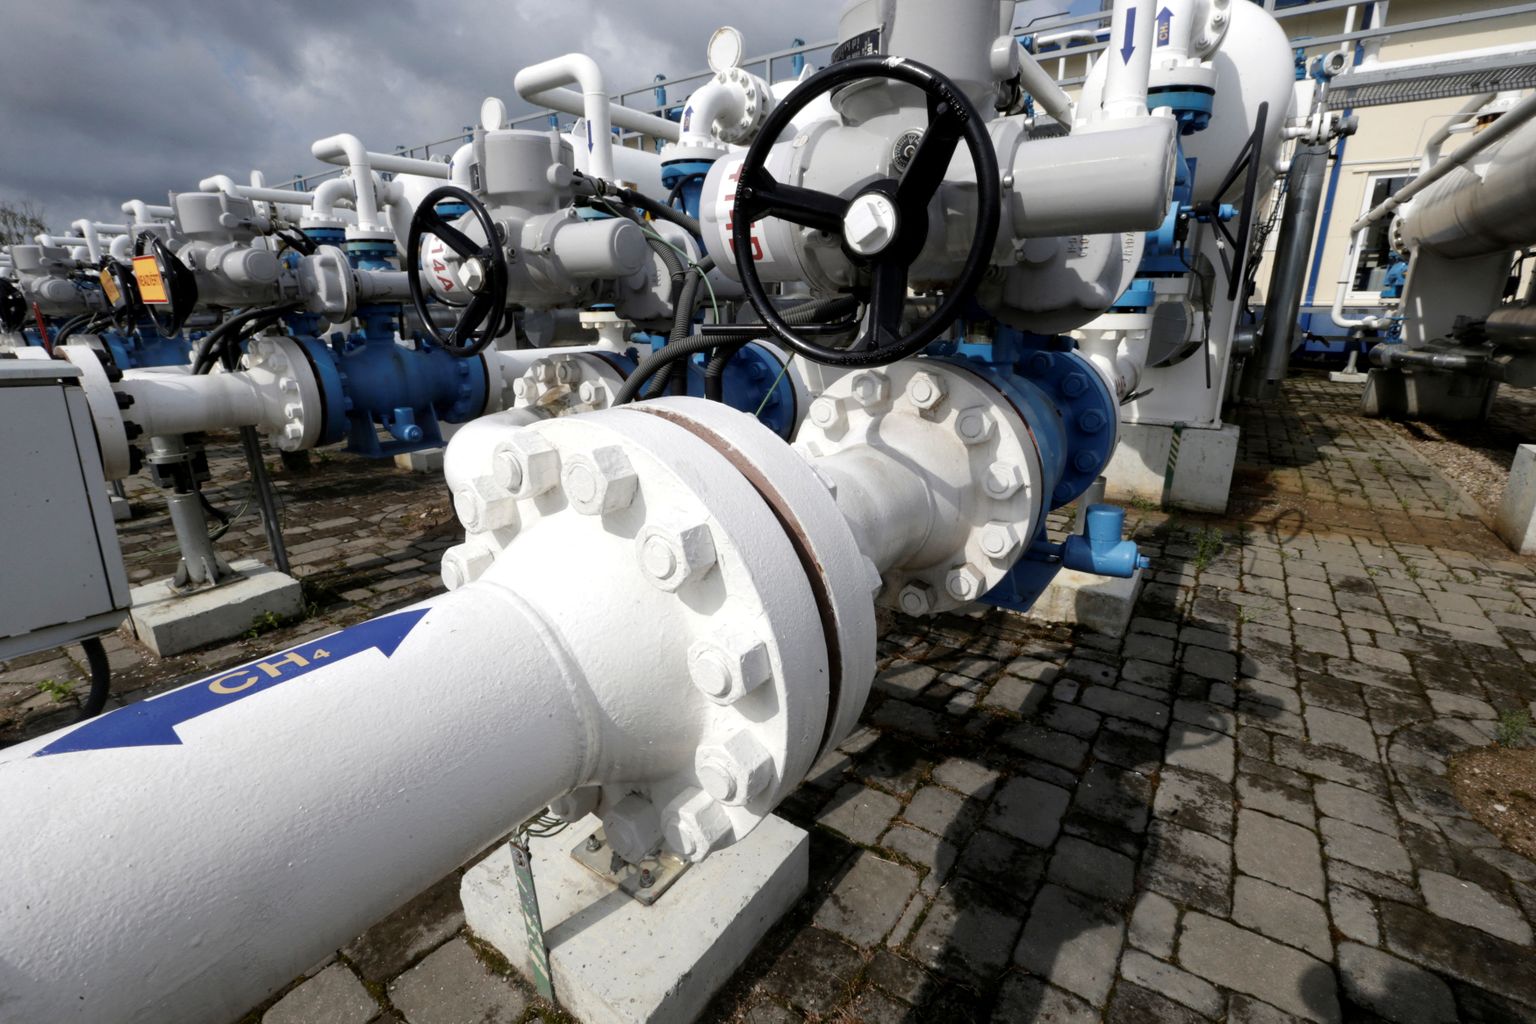 Inčukalnsi maa-alusesse hoidlasse oli septembri lõpuks Eesti gaasimüüjatel kogutud 1,3 TWh gaasi. Eesti klientidele on sellest mahust kavandatud alla poole.